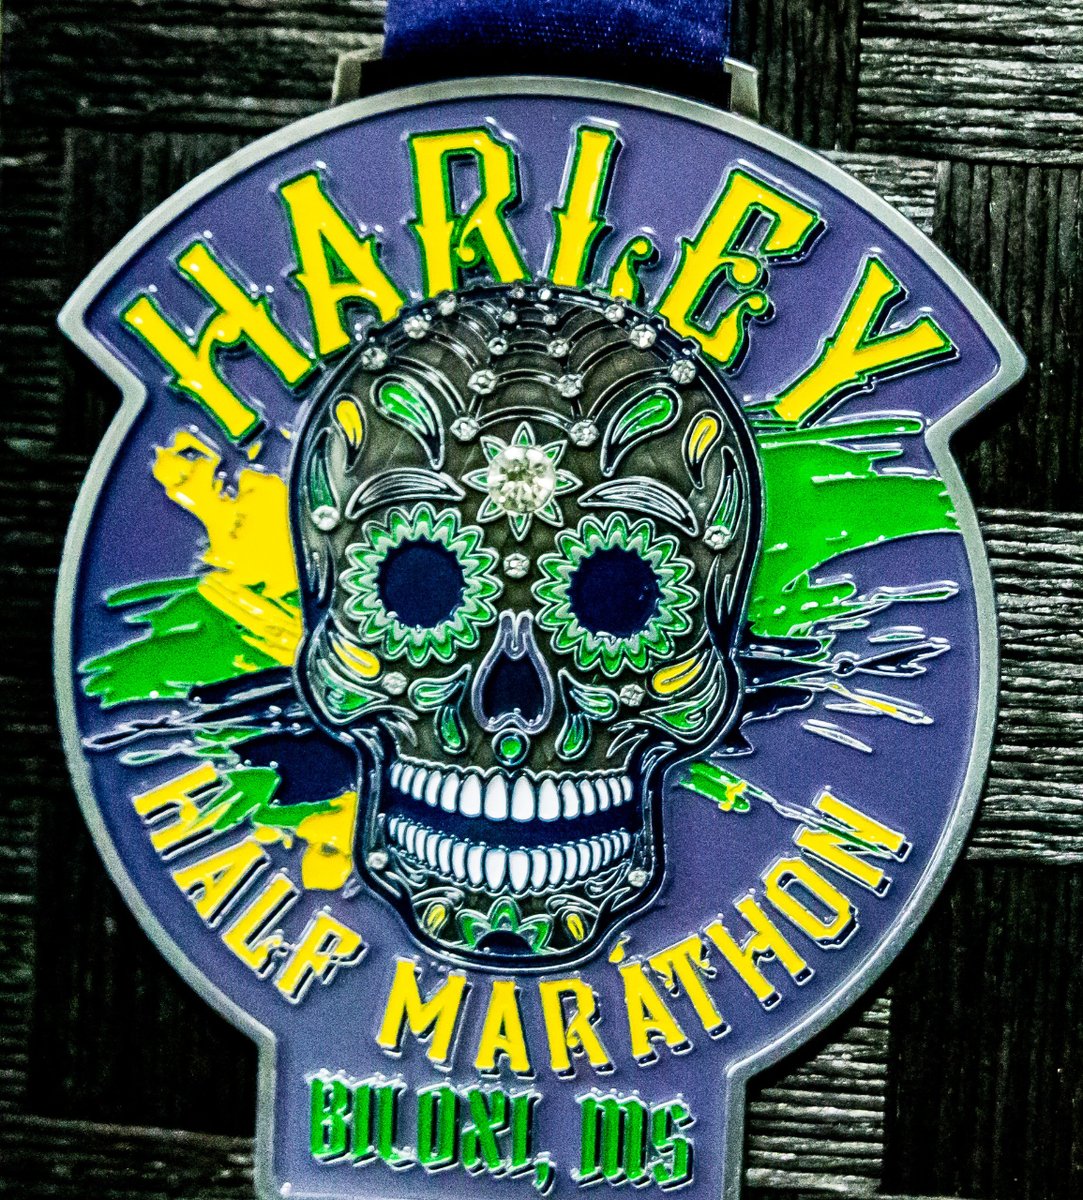 4th Annual Harley Half Marathon & 5k - 10.21 (8 AM #5k) thru 10/22/2023 (7:30 AM #Half) - Biloxi, MS #halfmarathon #running #walking #fitness #runmississippi #visitms #mscoastlife #secretcoast   *Info: rodsracersms.info/gd5